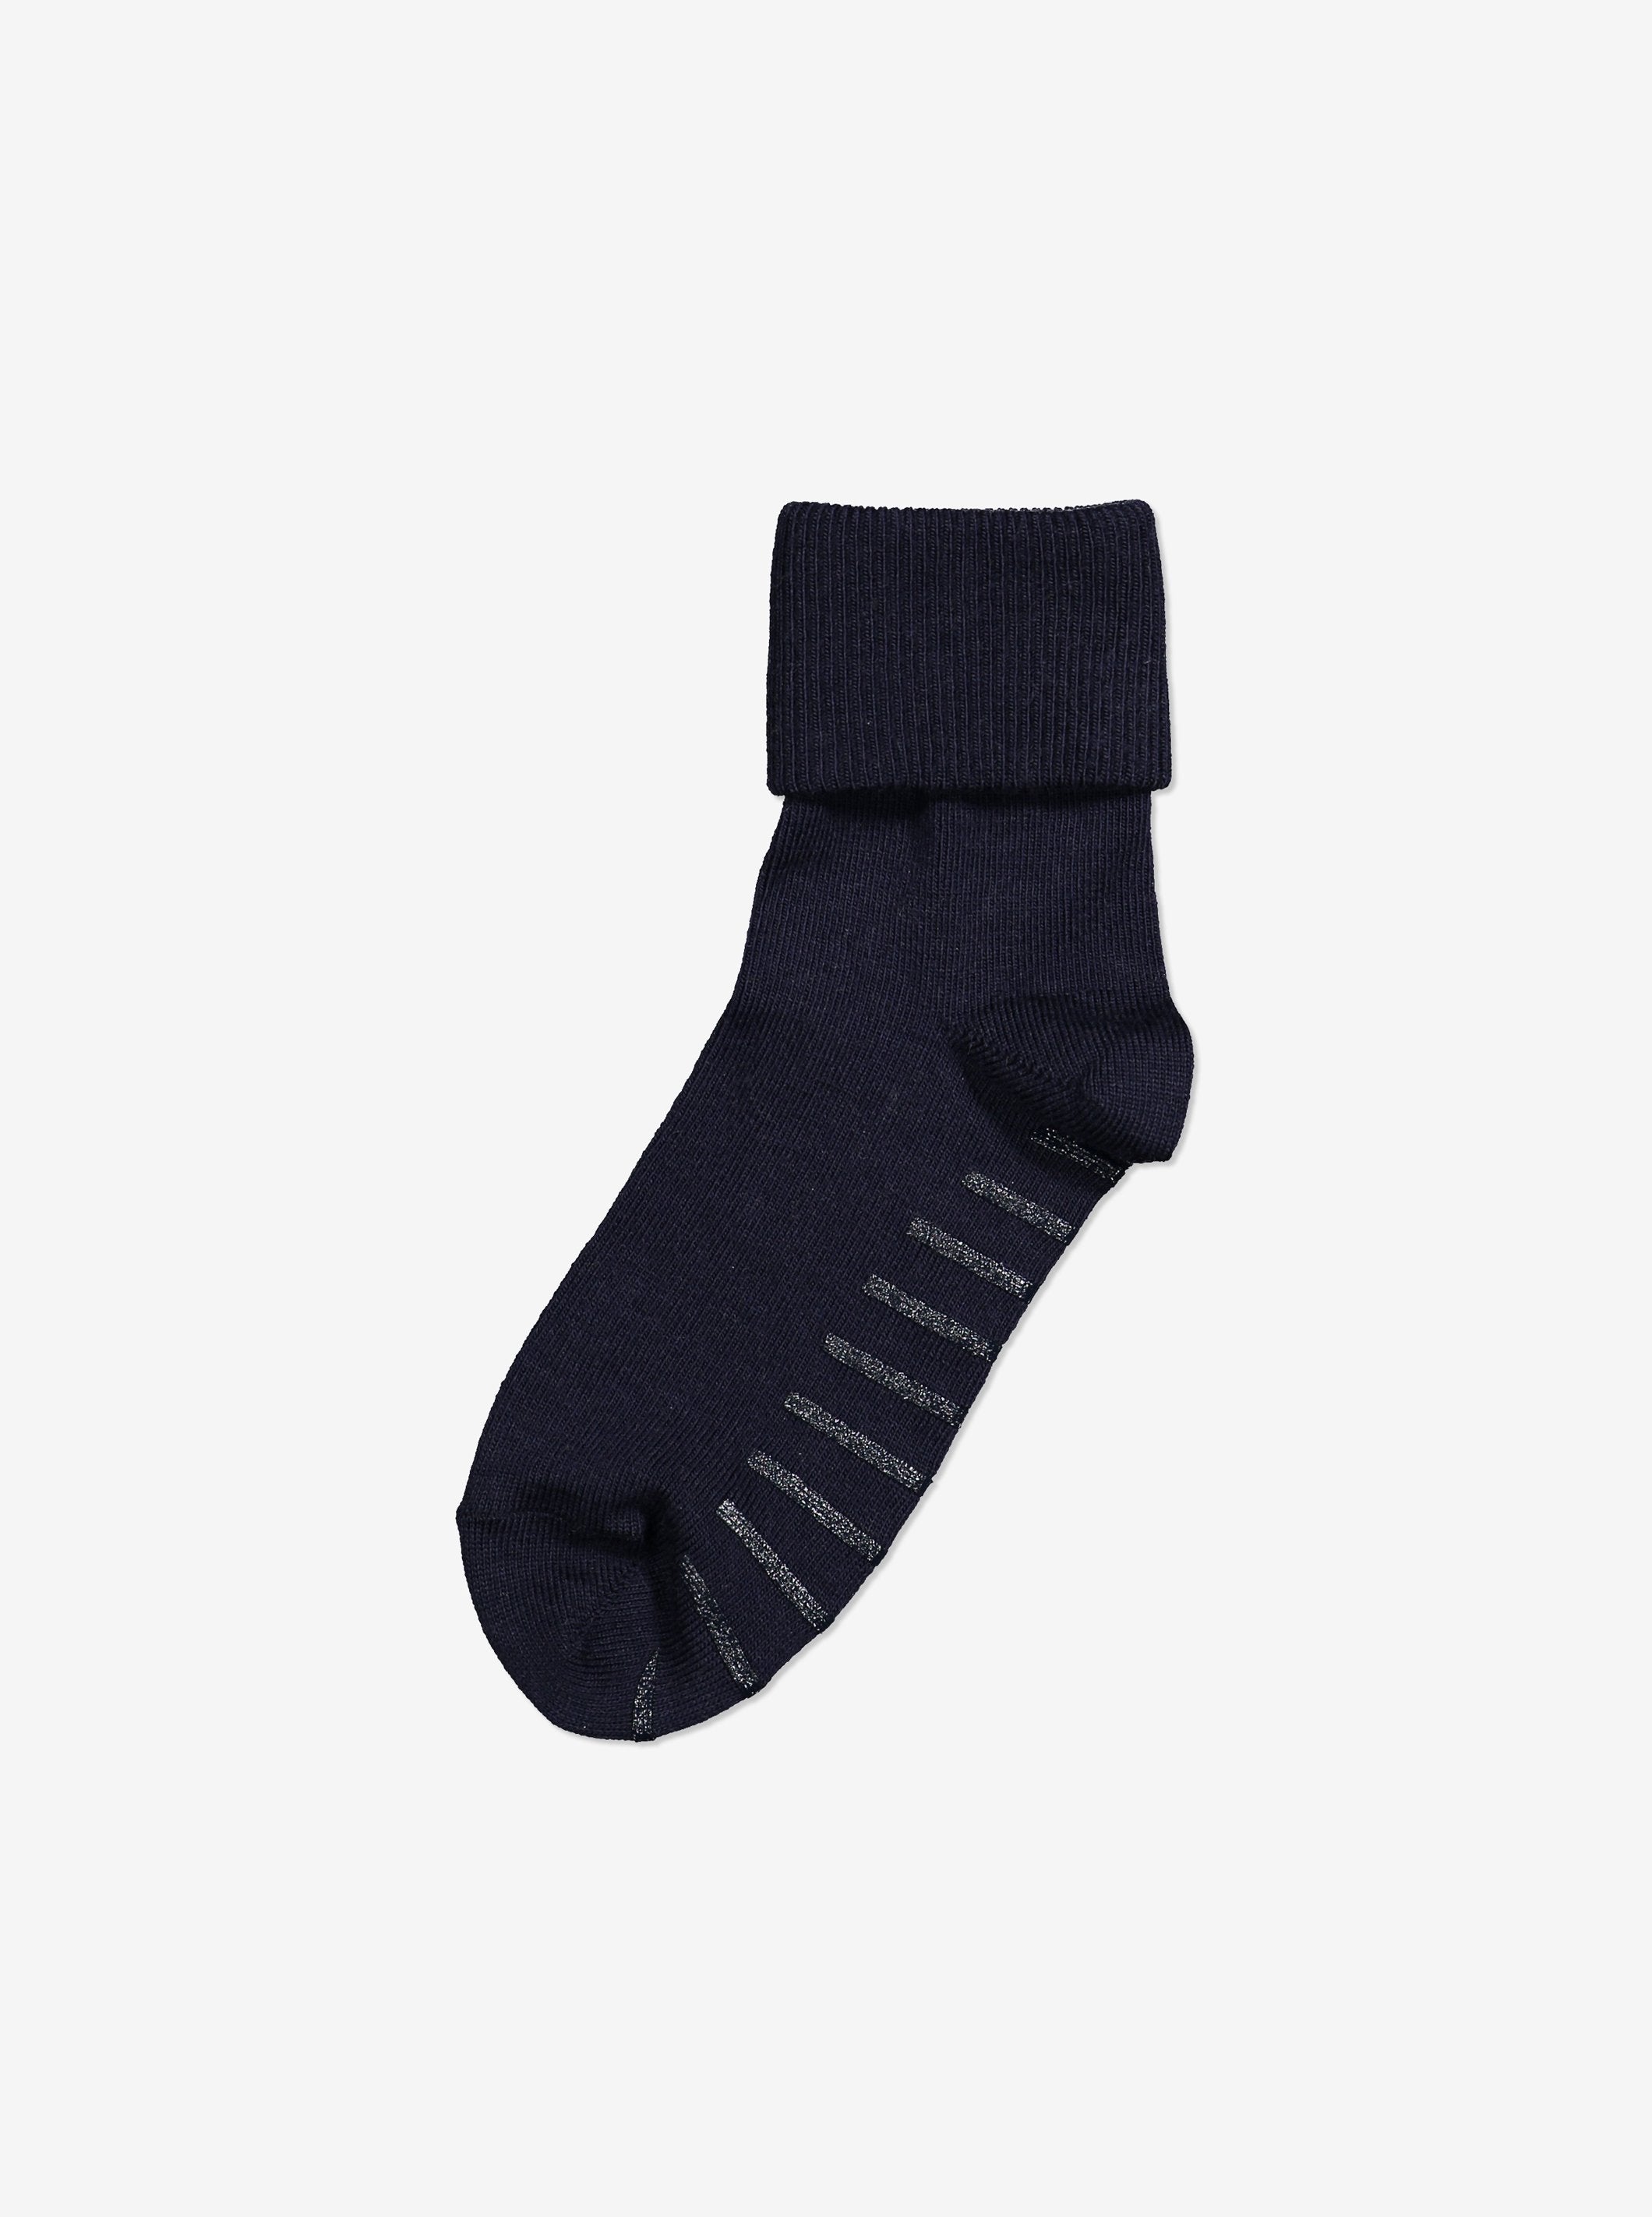 Merino Wool Kids Socks - Antislip